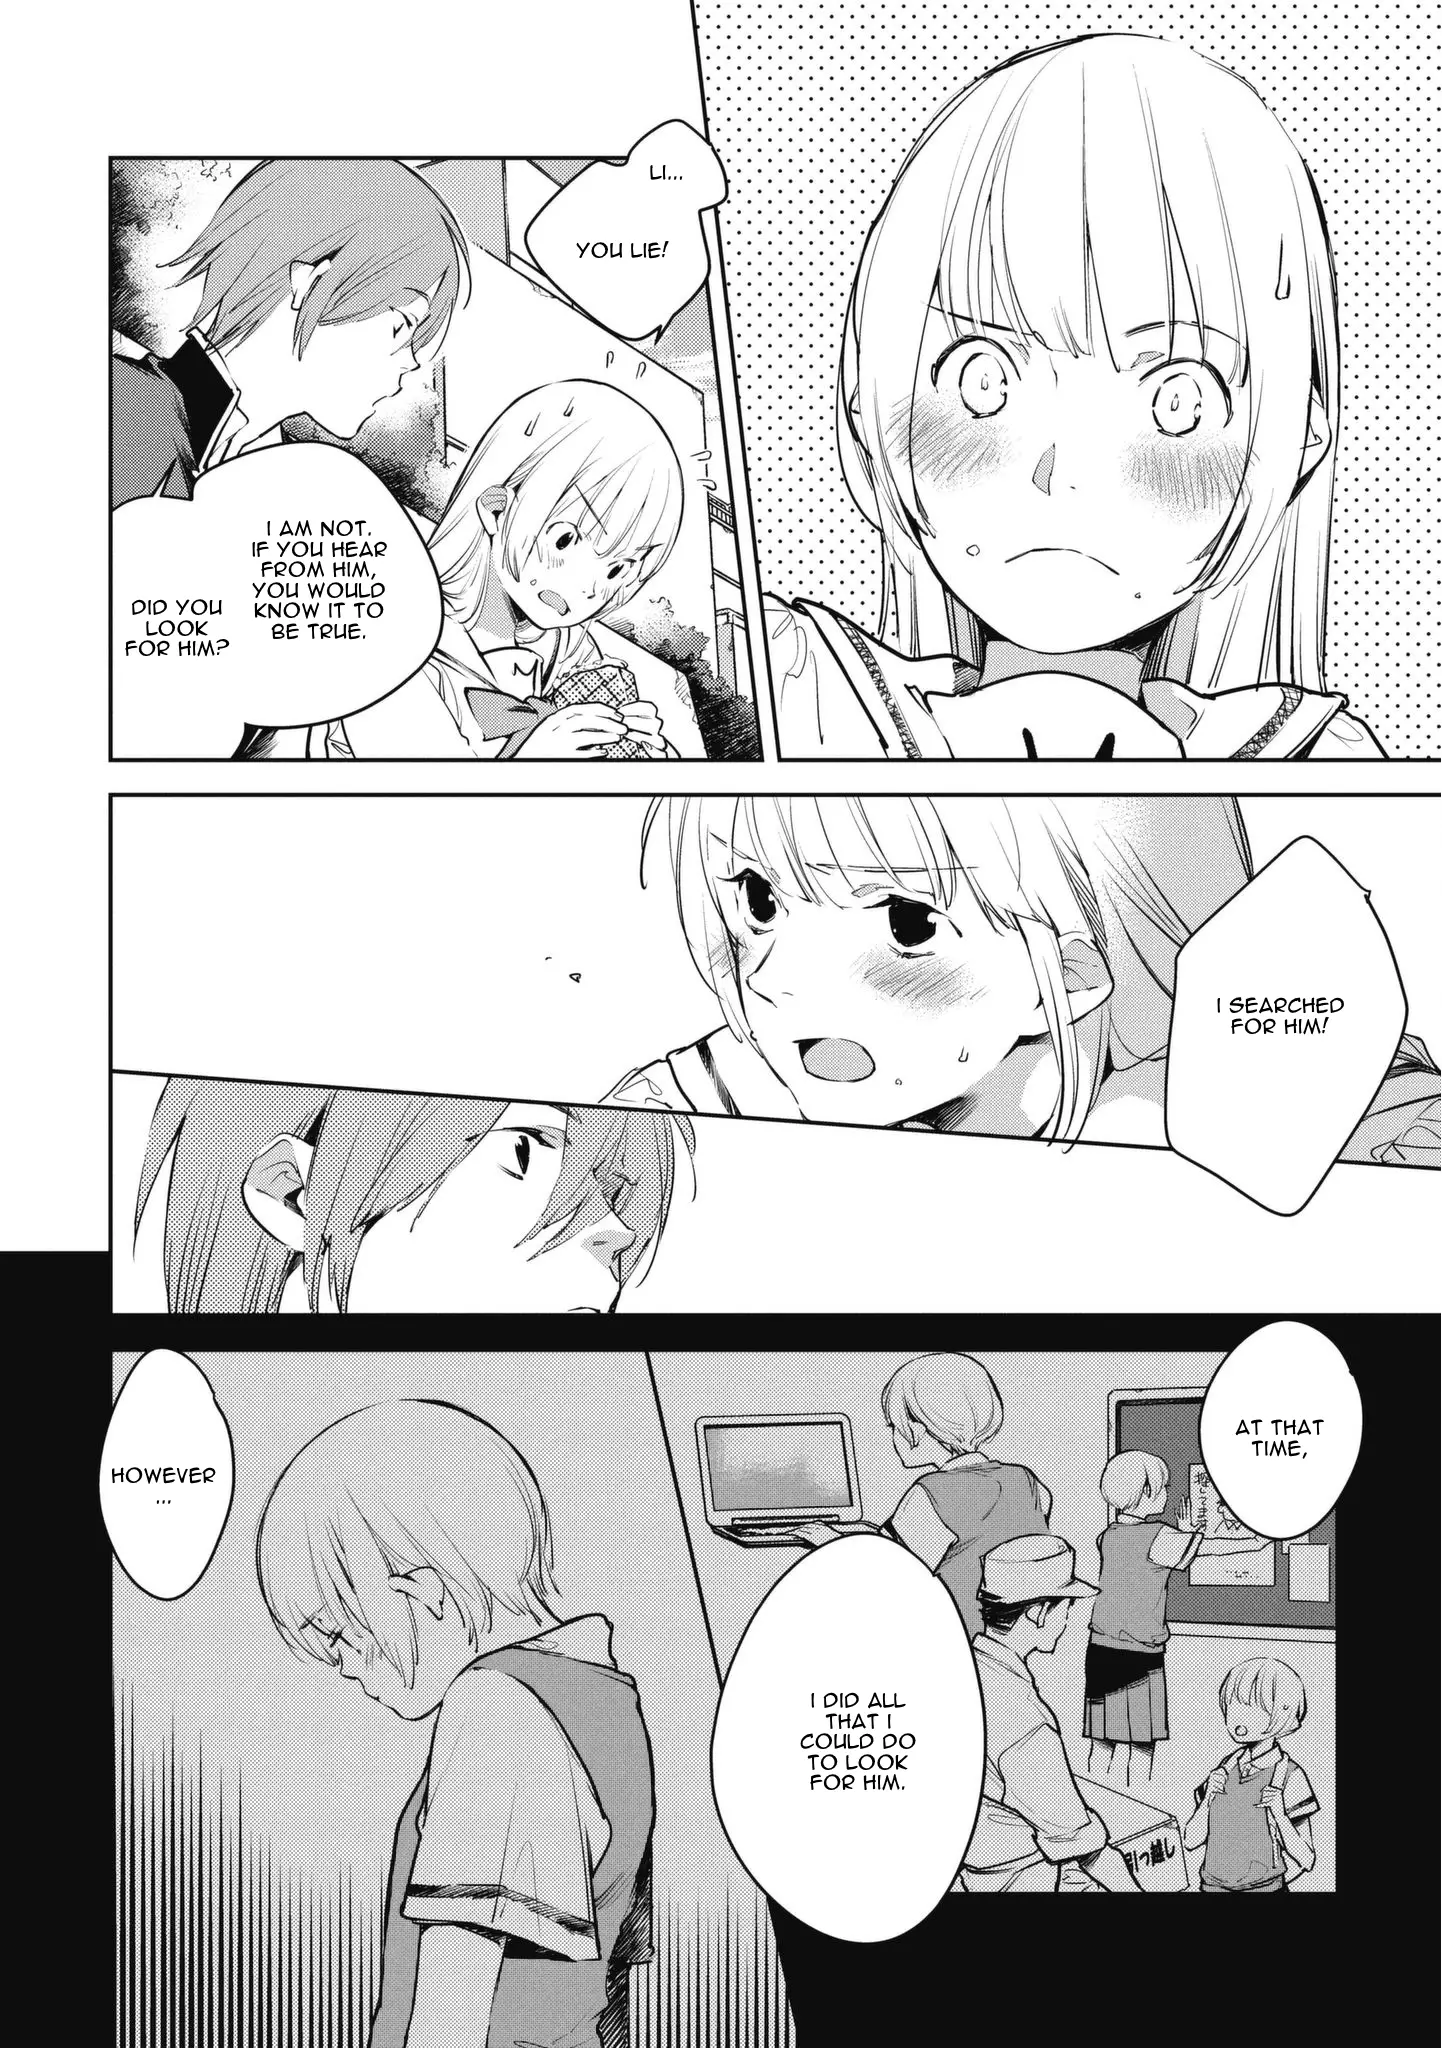 Okashiratsuki - 7 page 18